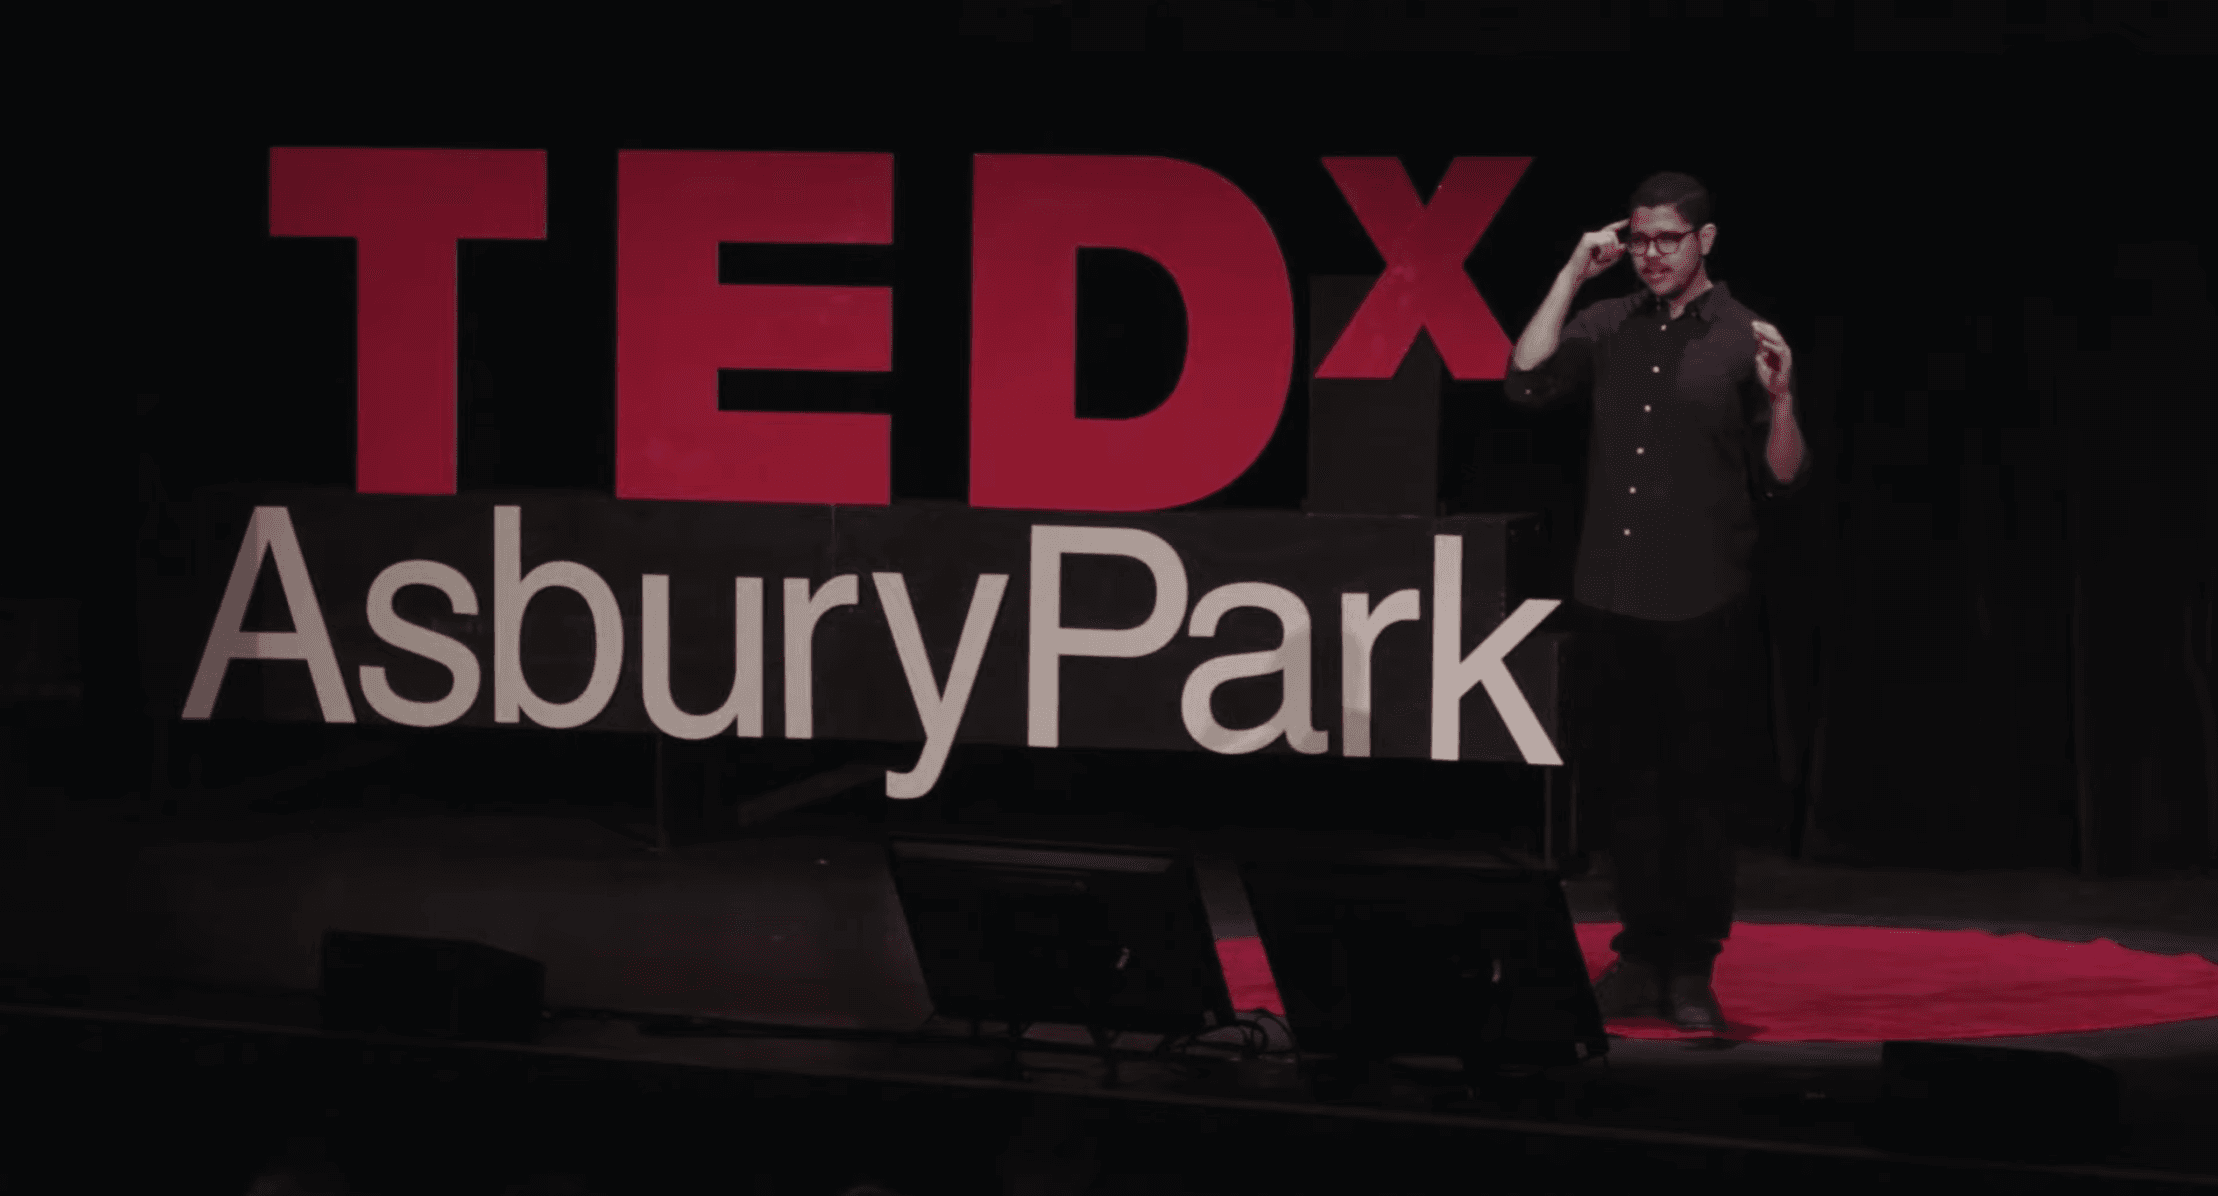 Alex Castillo - TEDx speaker